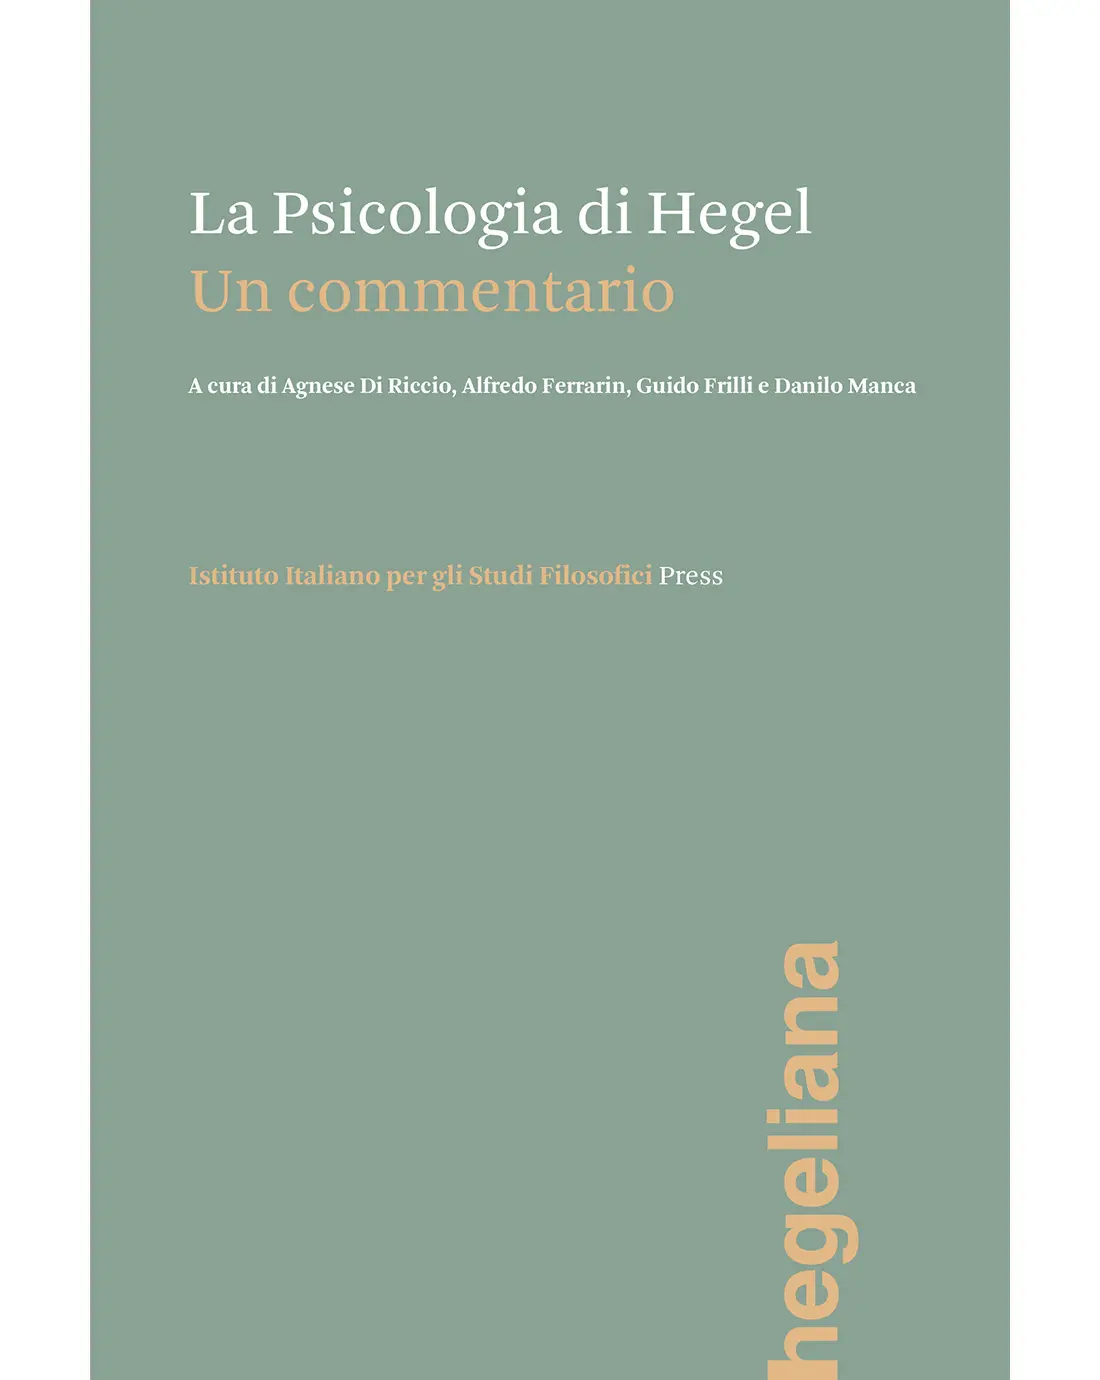 hegel y la psicologia - Que nos enseña Hegel